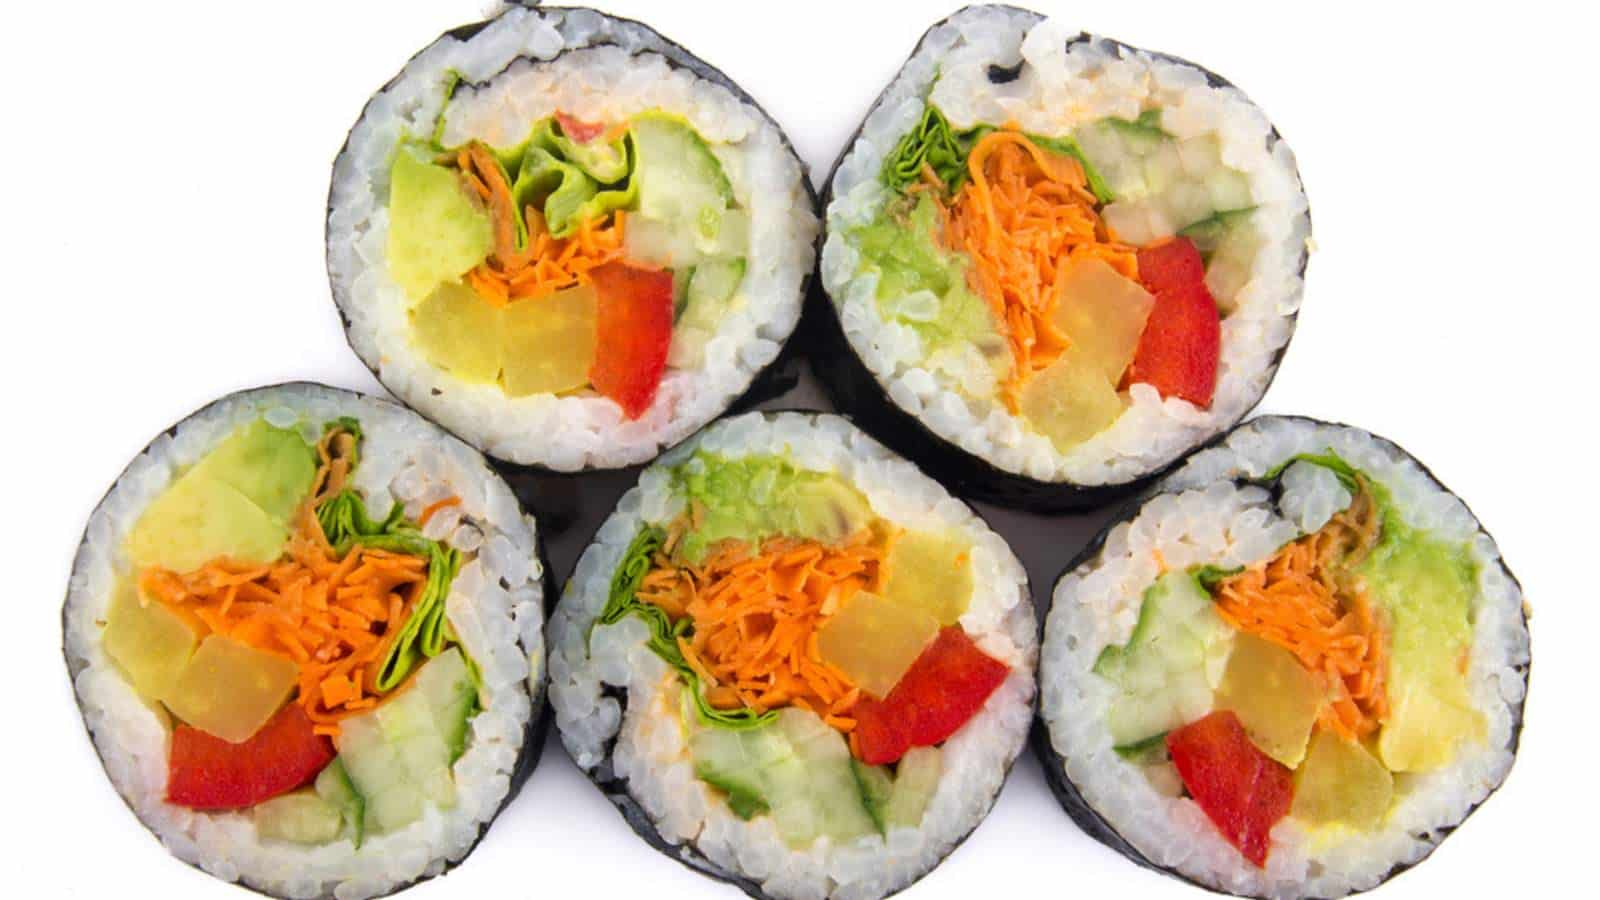 Veggie sushi rolls.
